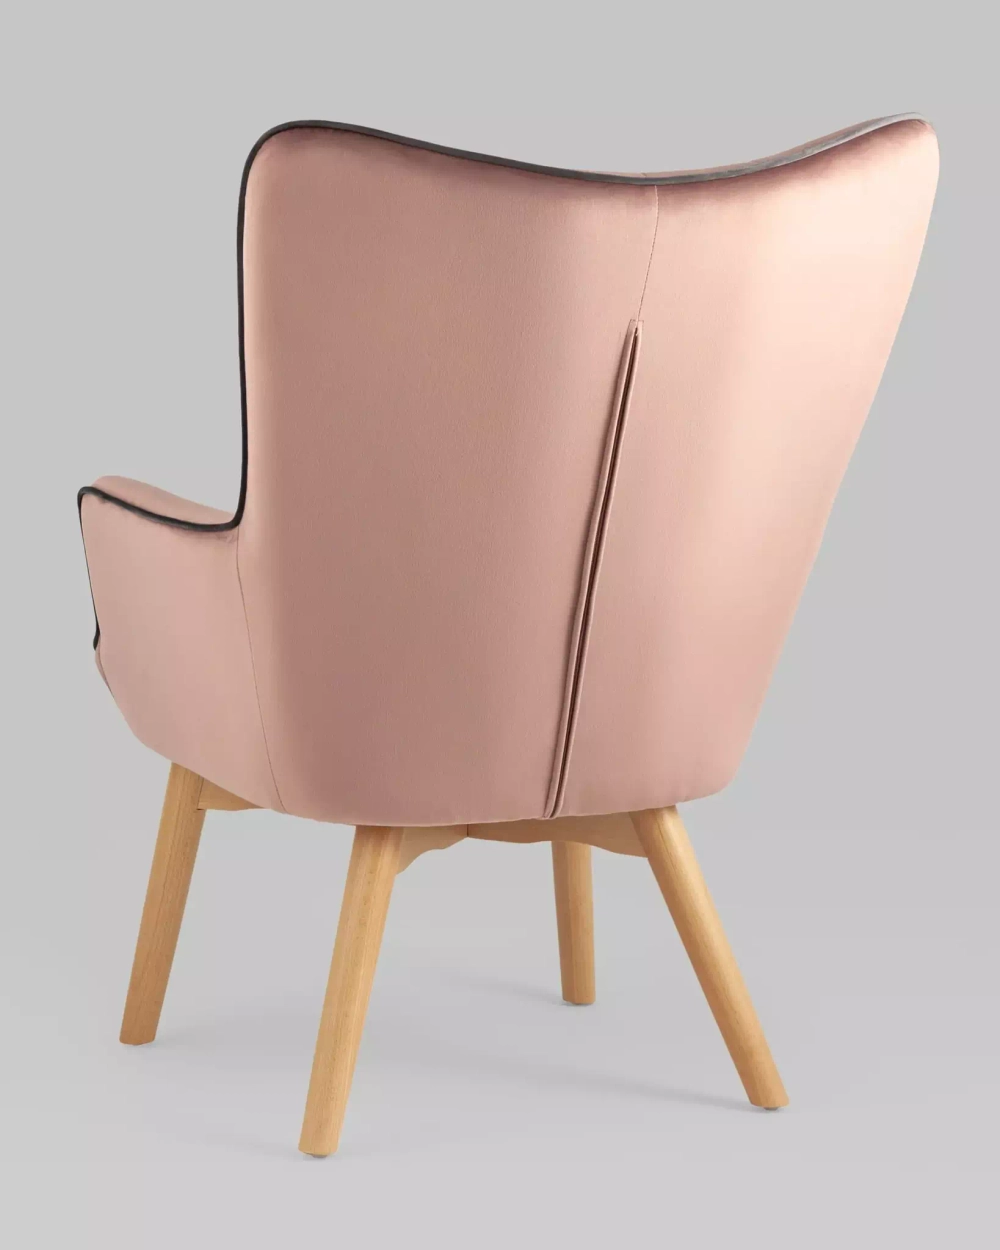 Кресло Манго розовый